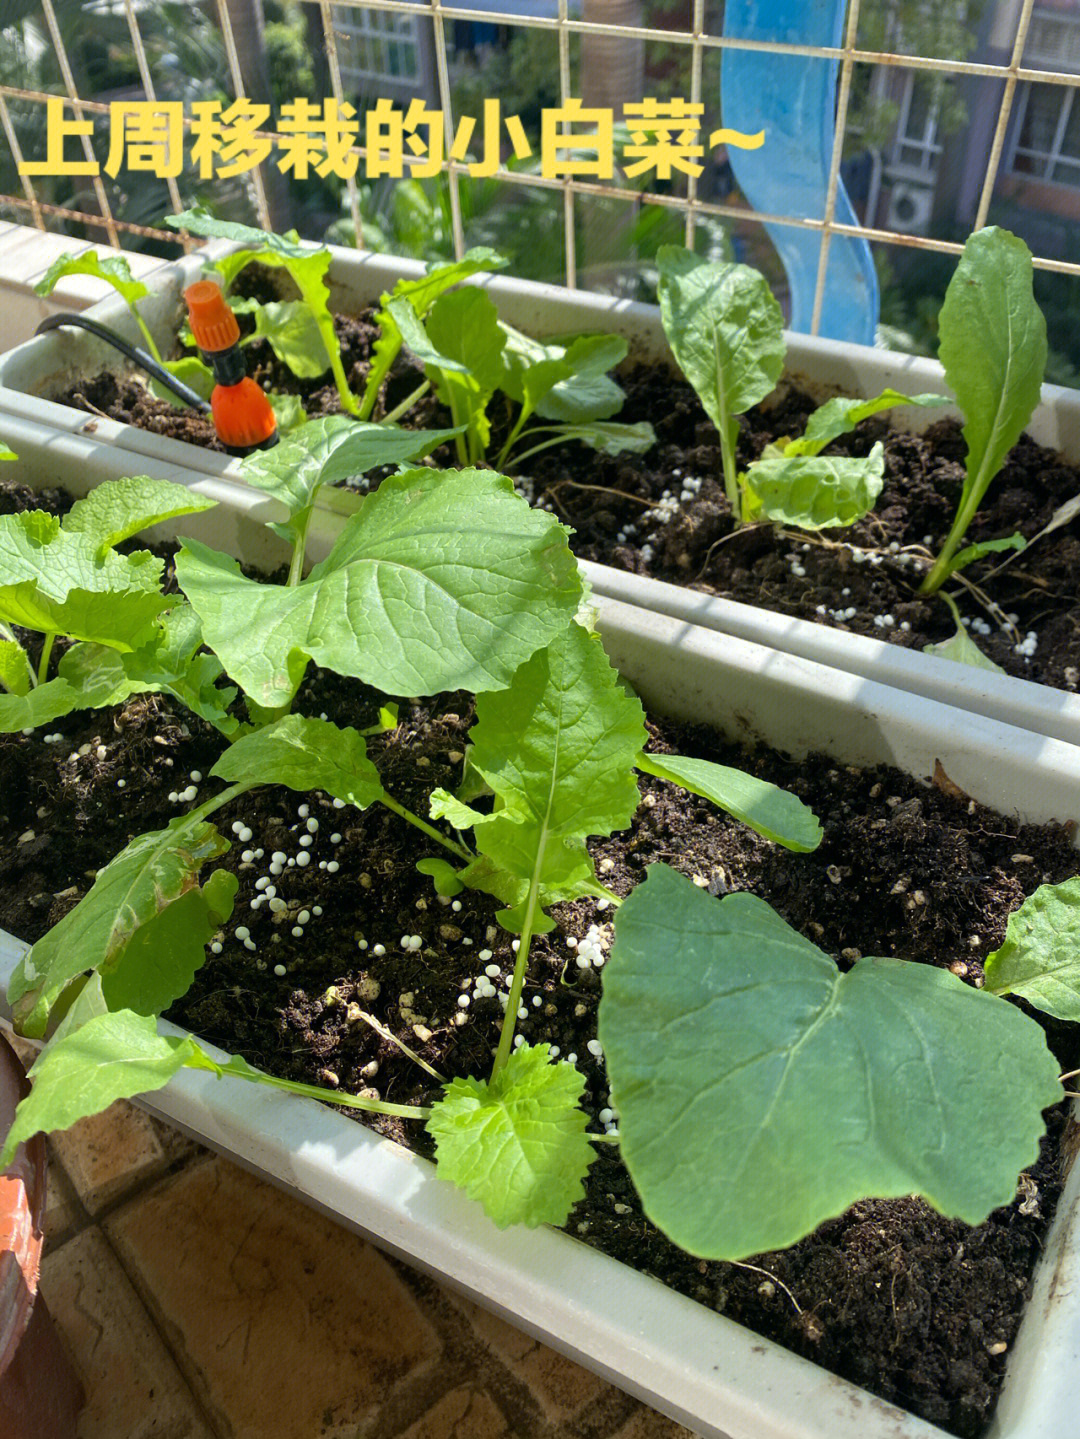 上周种的生菜才刚发芽的样子,这周又种了豌豆苗,希望快快长大,下周就